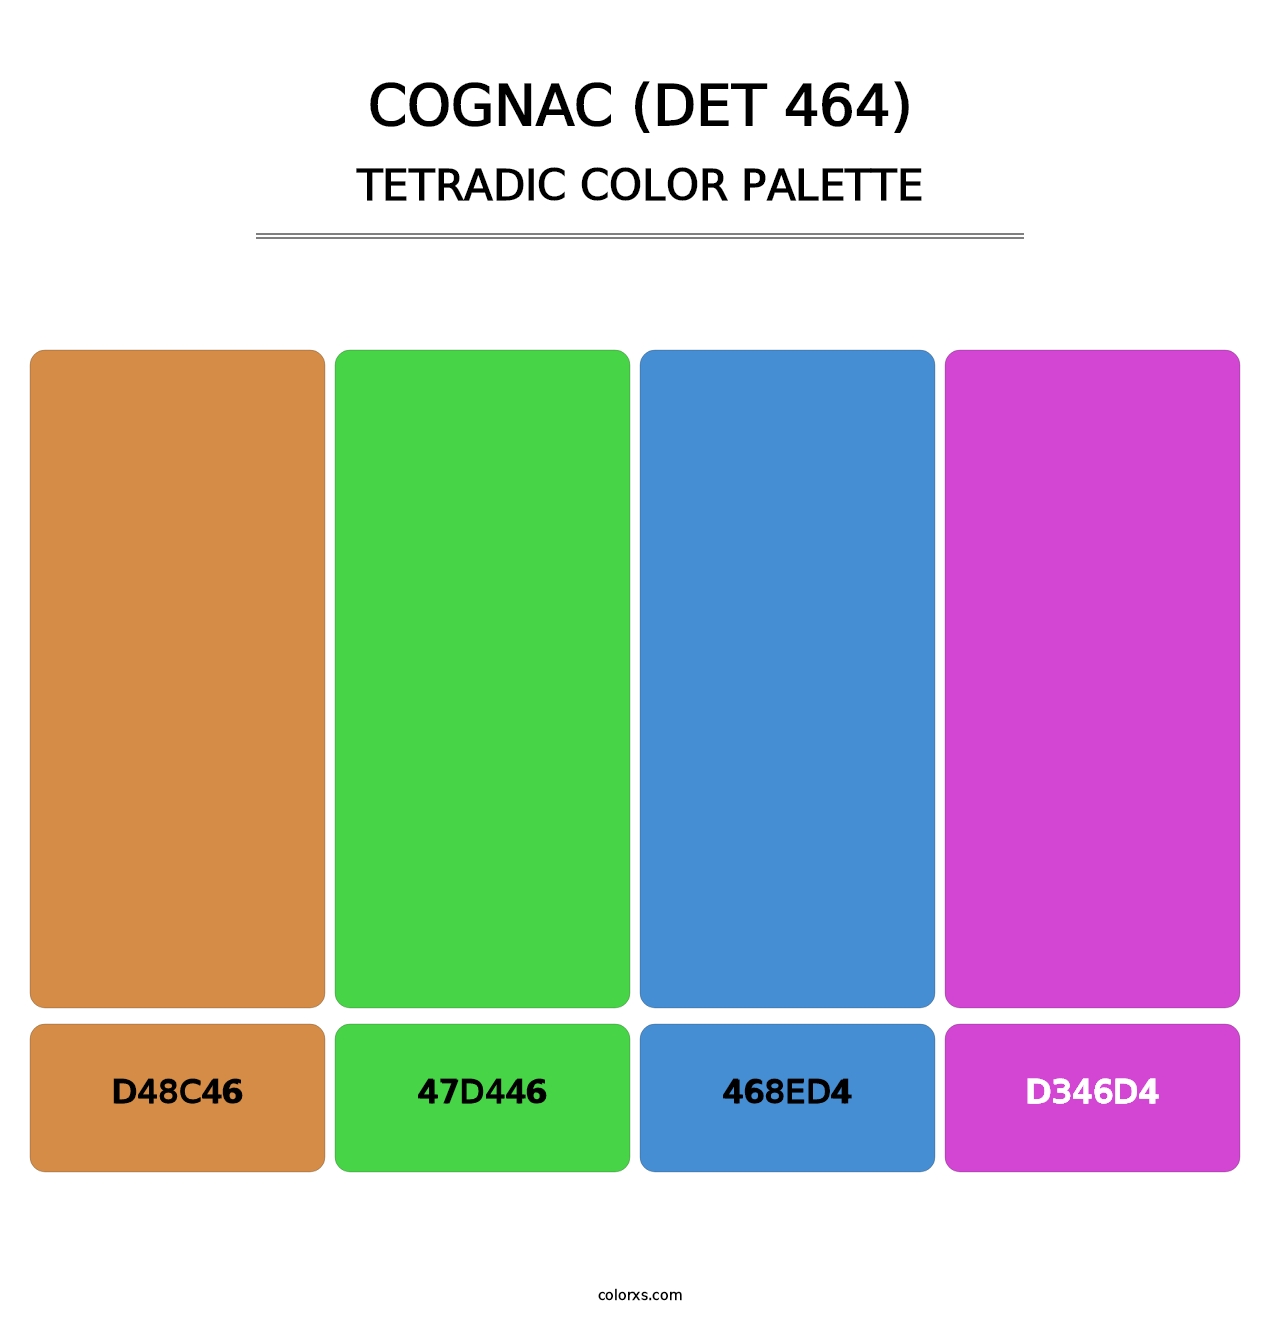 Cognac (DET 464) - Tetradic Color Palette